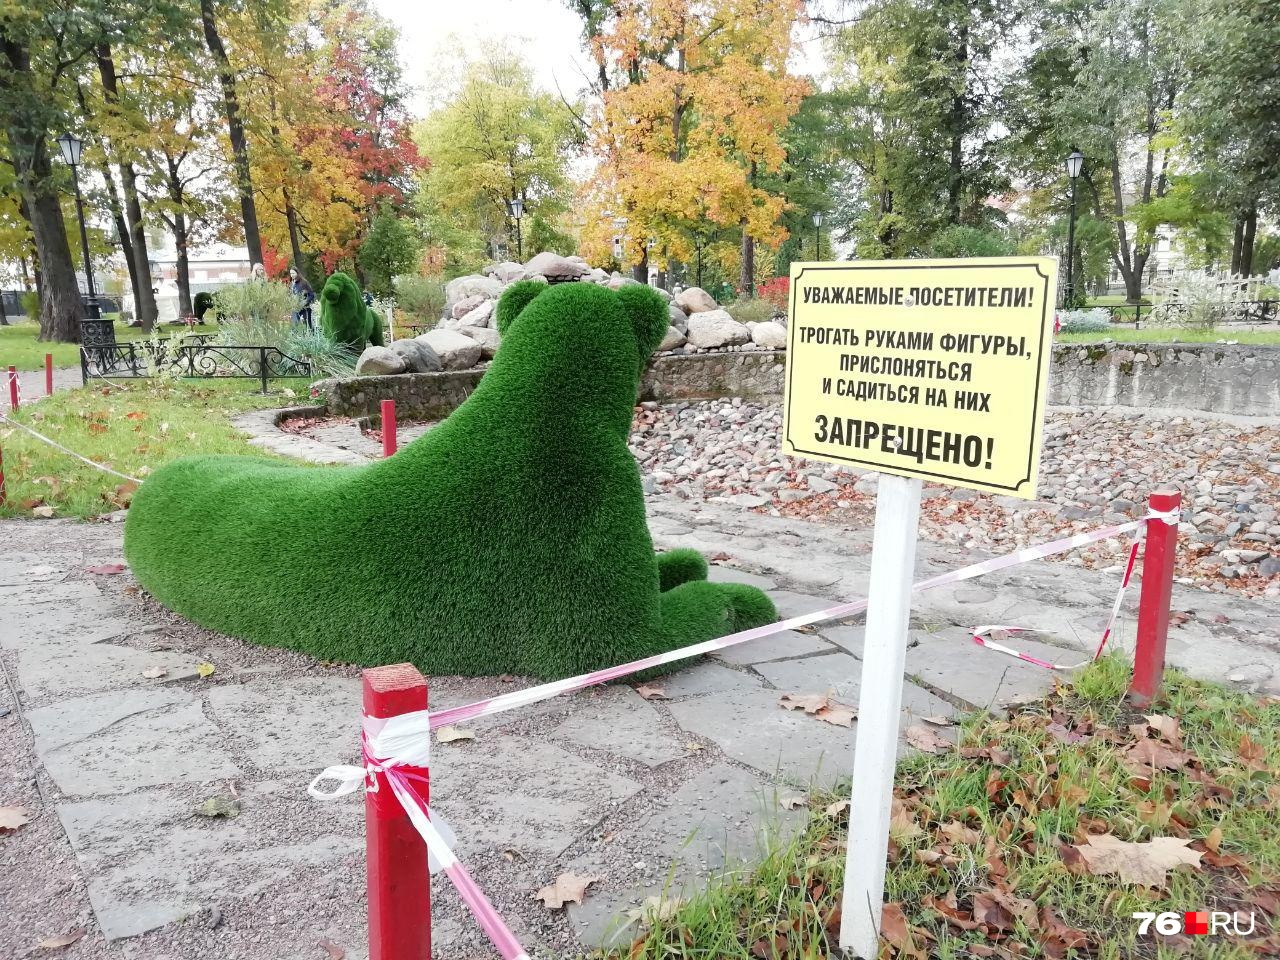 Сад строгого режима: в Рыбинске создали городской парк, где ничего нельзя